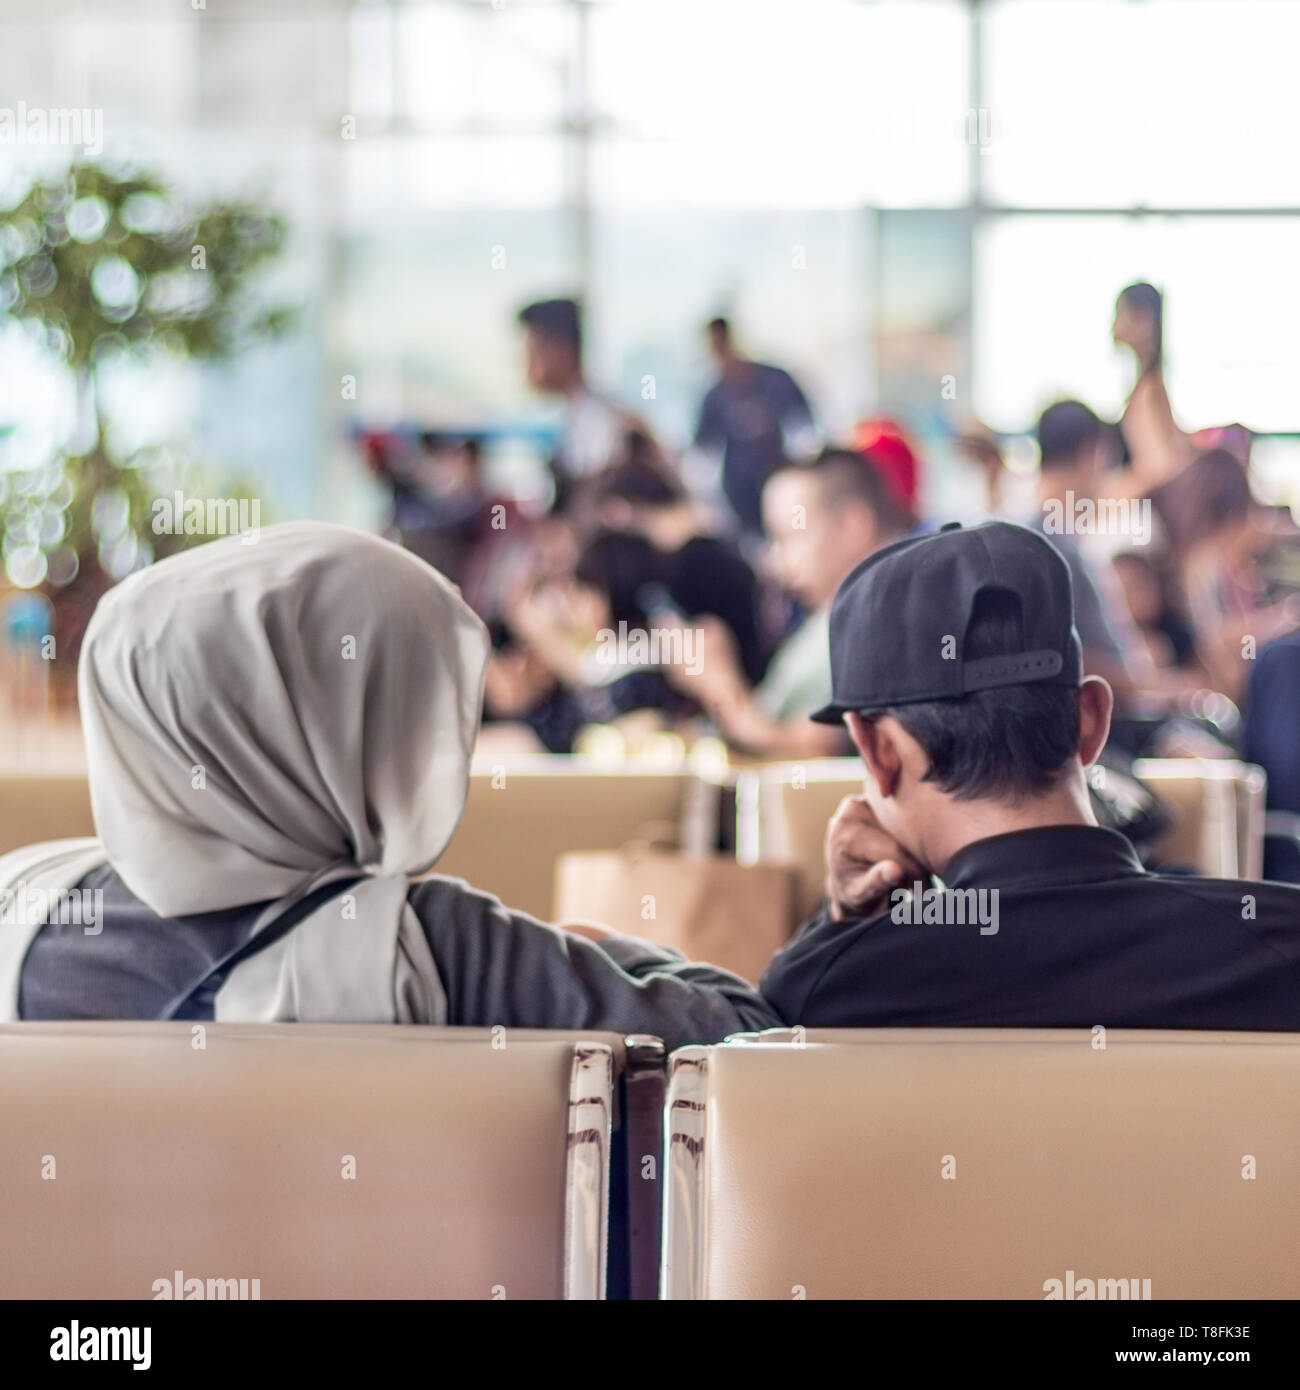 Moderno islamico musulmani asian giovane seduto e in attesa di un volo in partenza a international airport terminal Foto Stock